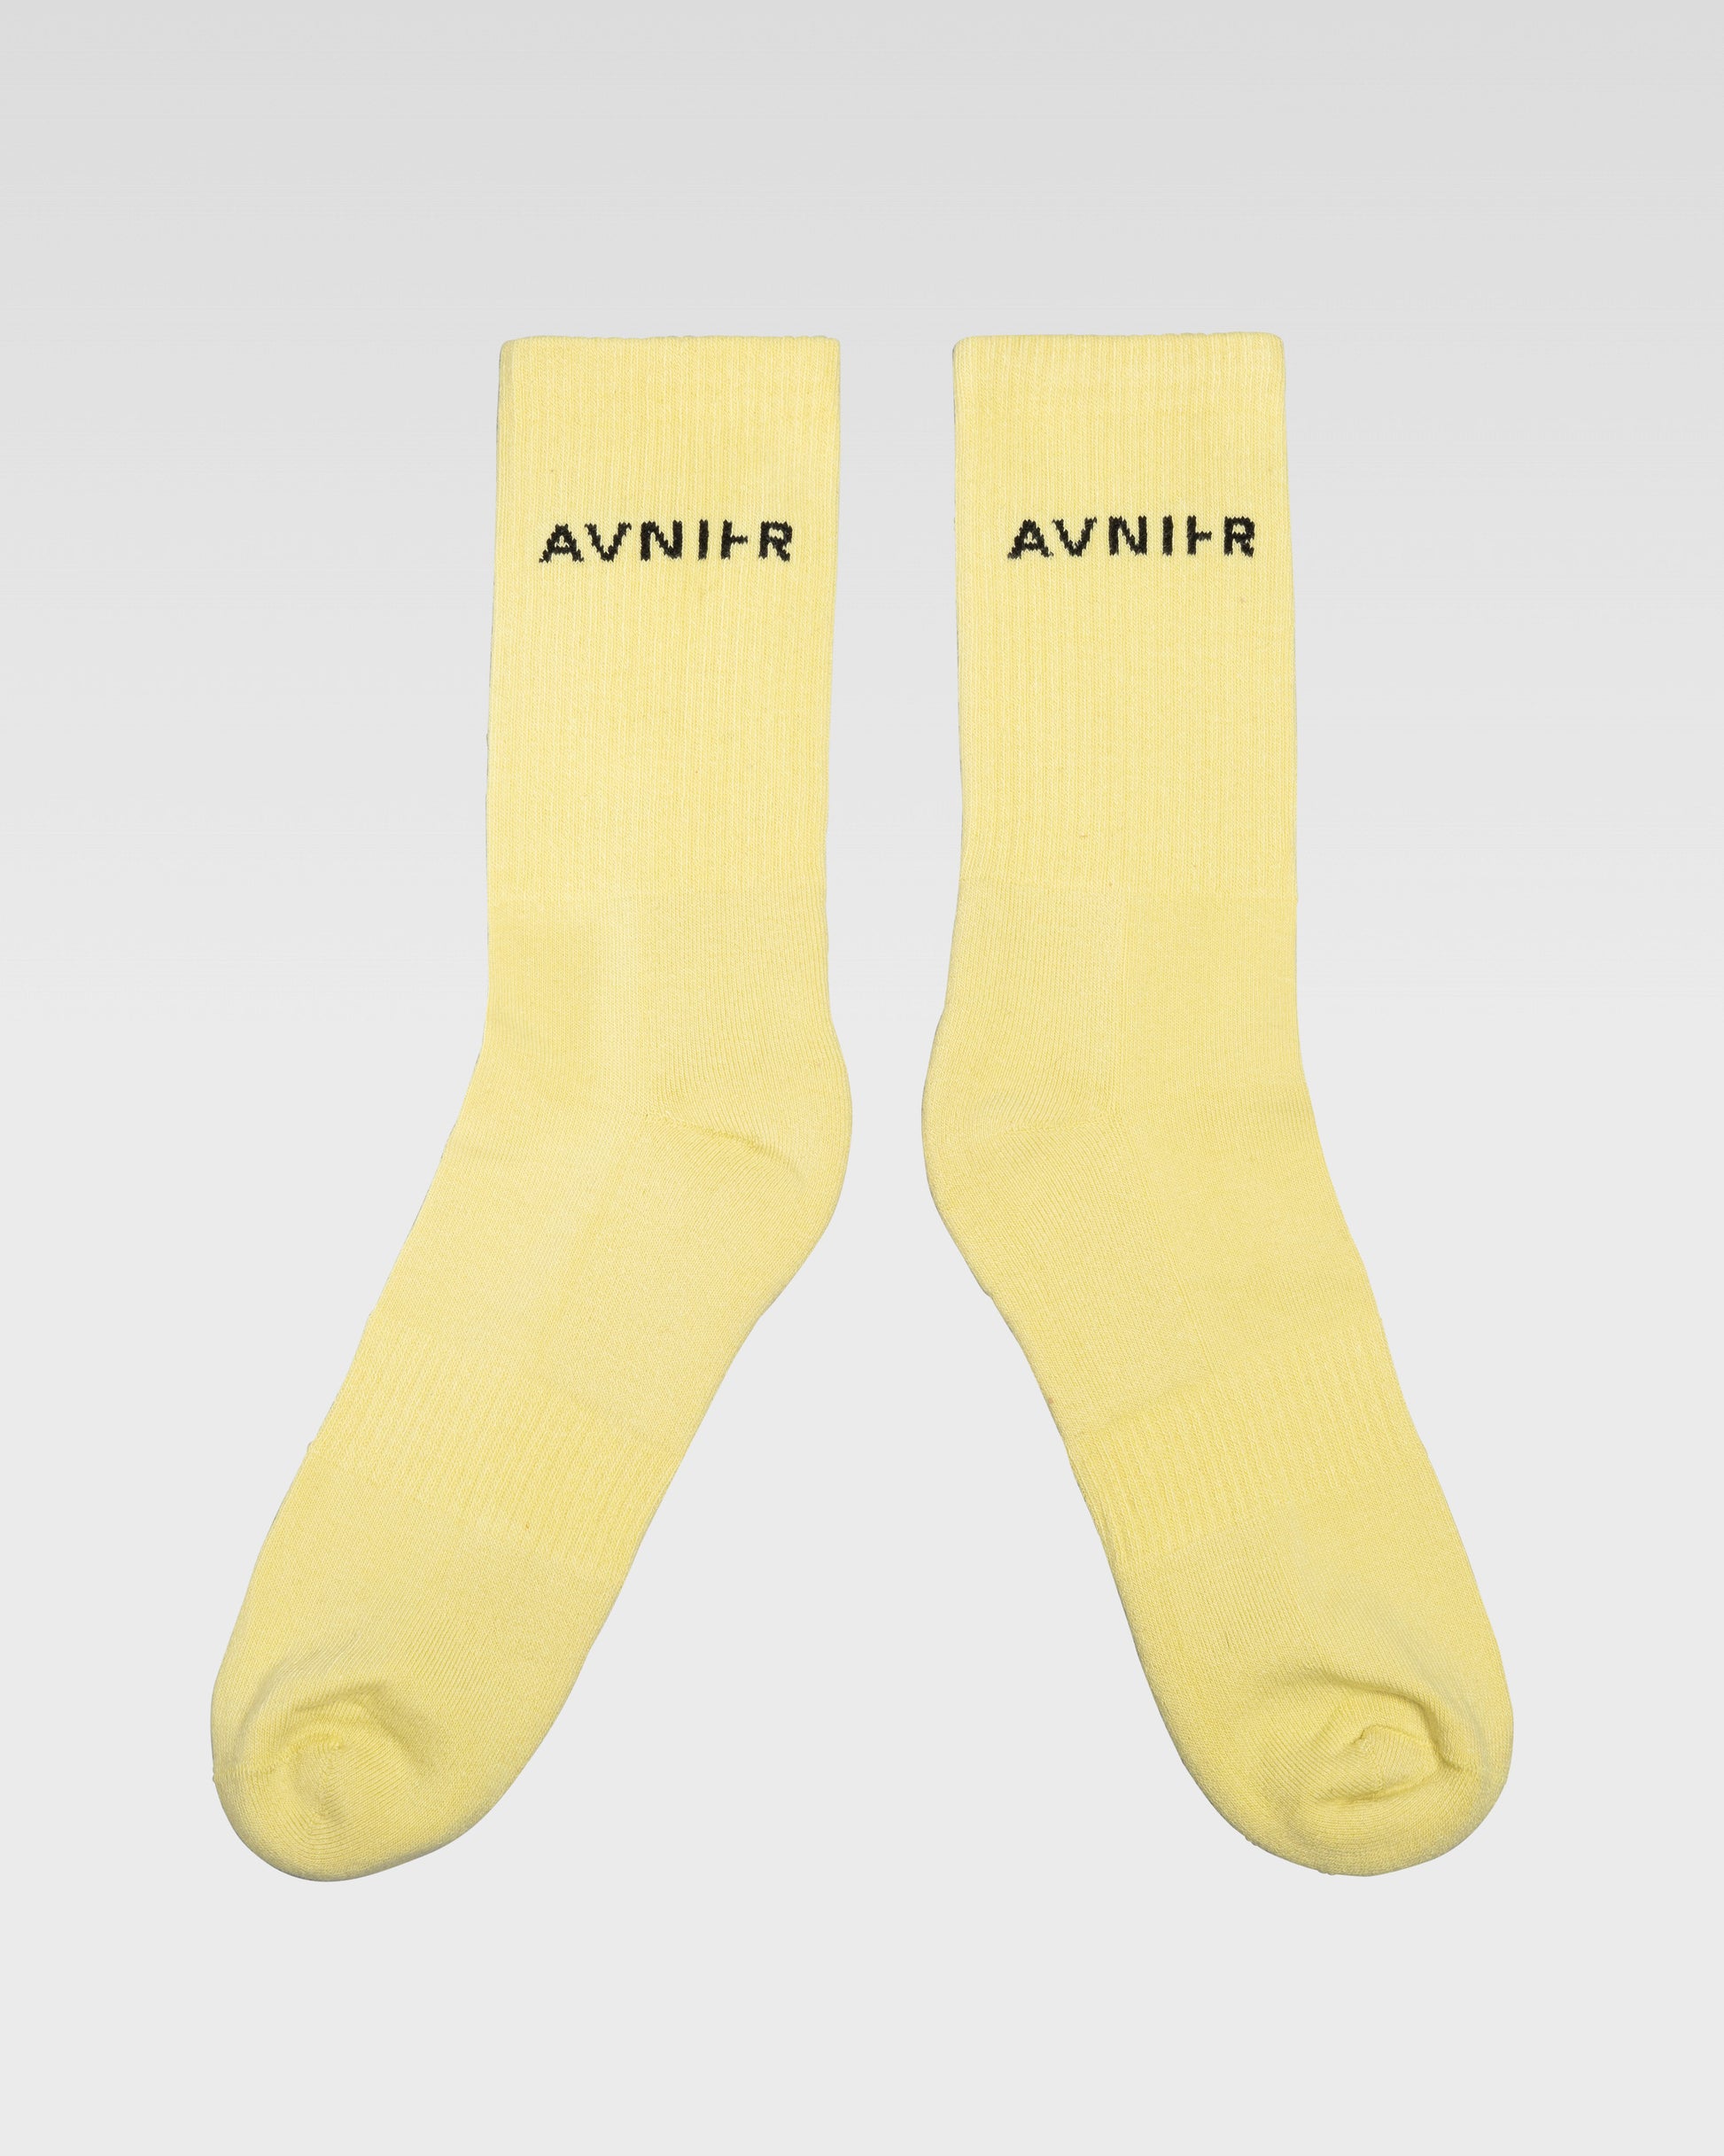 socks-loop-horizontal-jaune-pale-avnier-avnir-2-packshot-face - jaune pâle